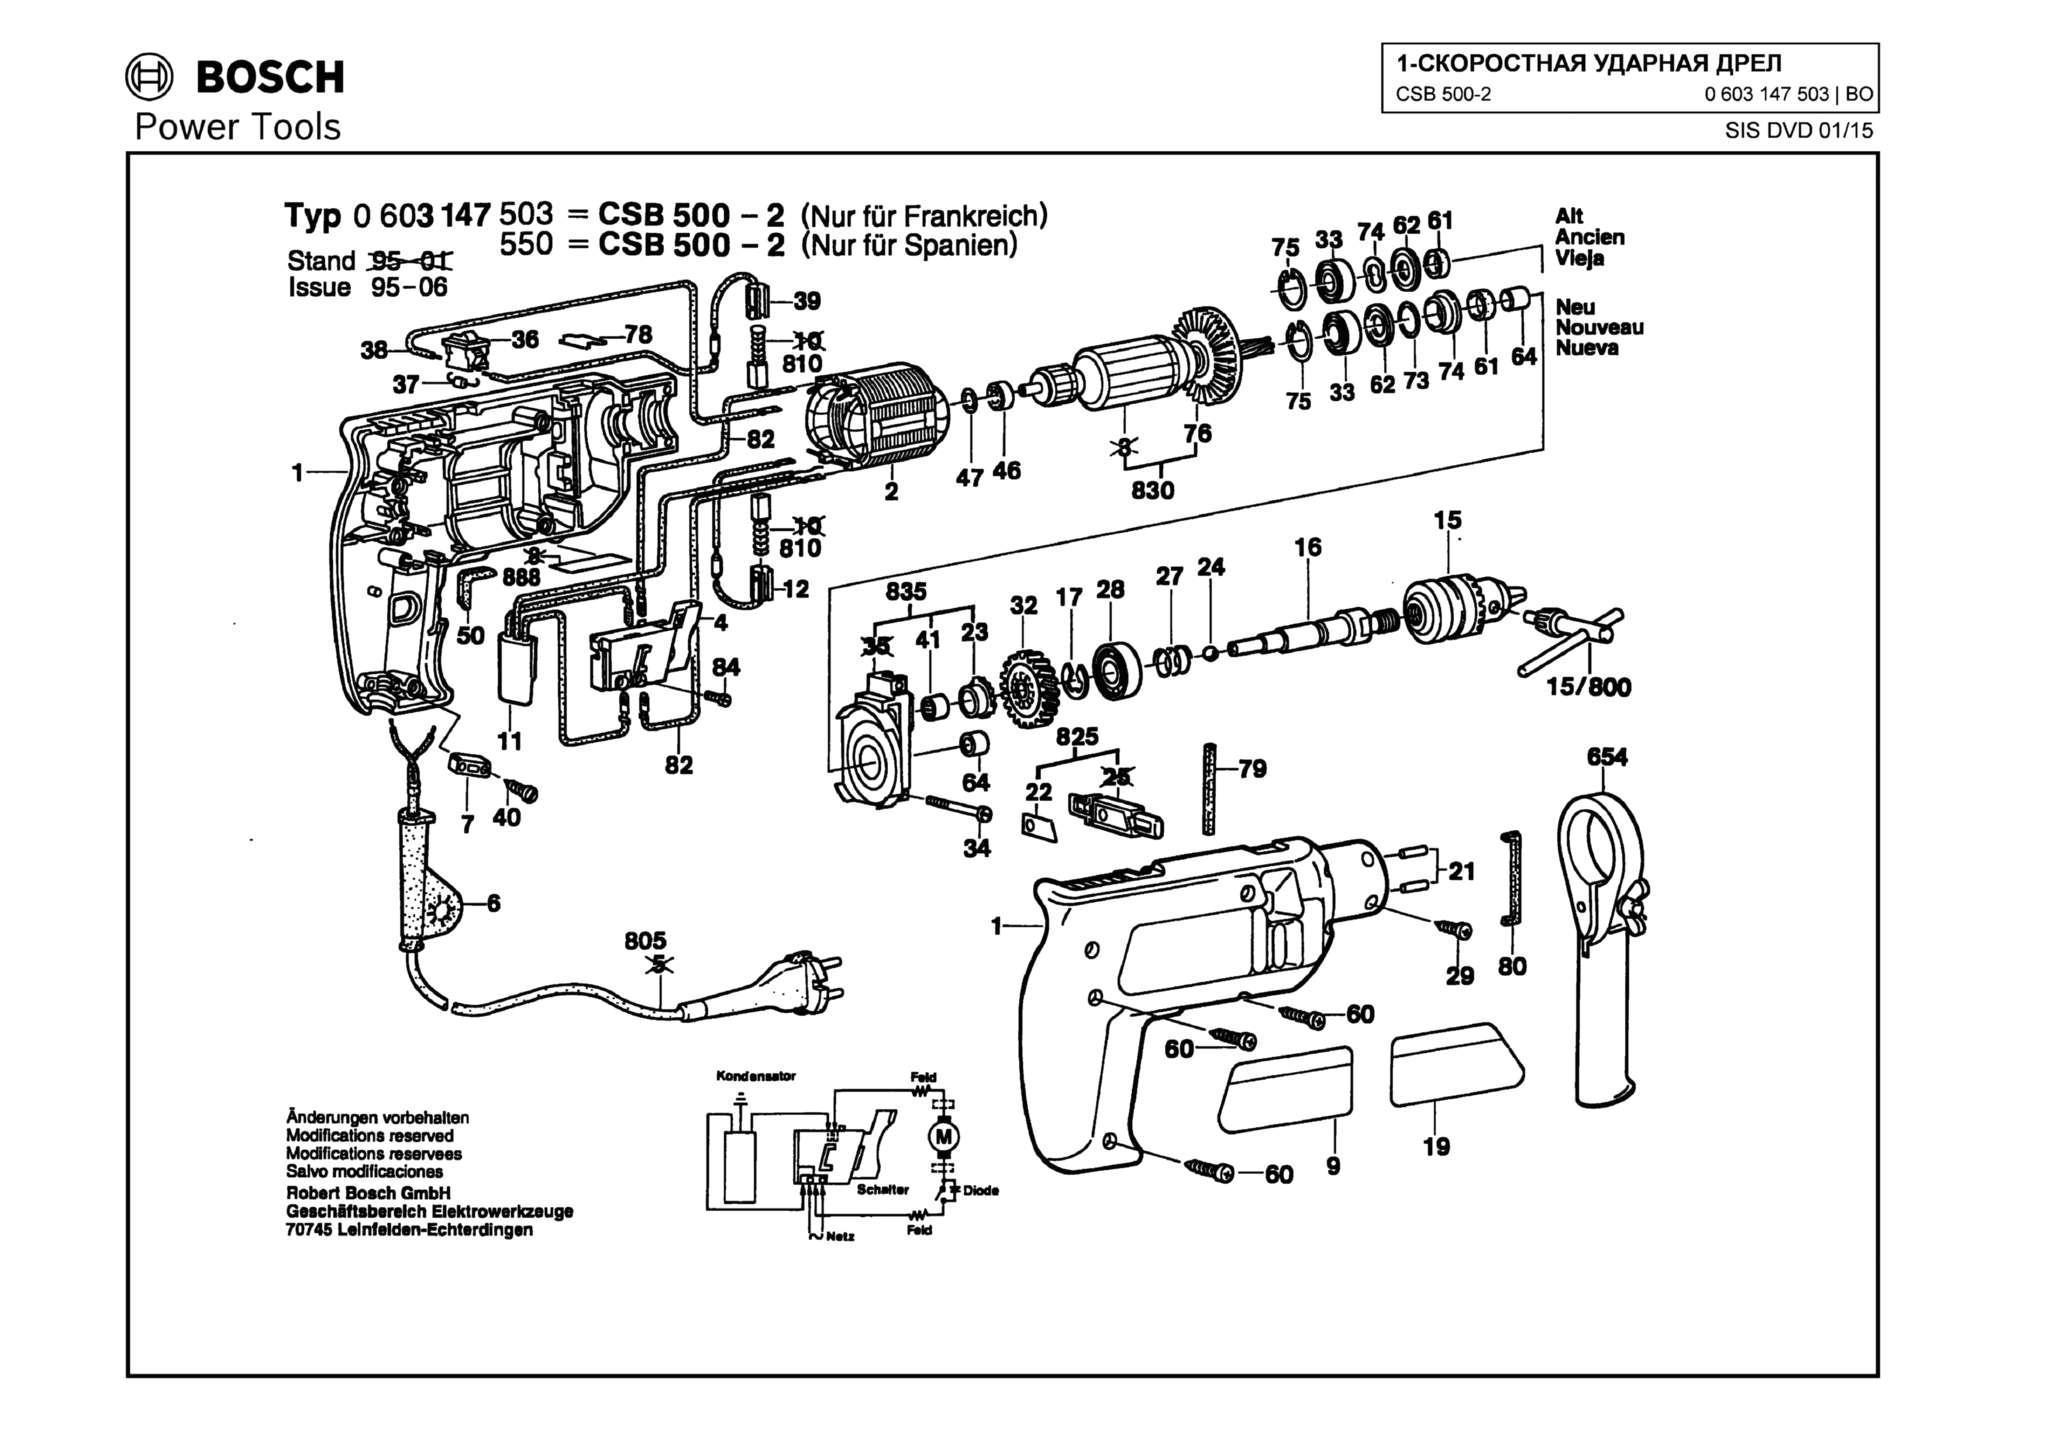 Запчасти, схема и деталировка Bosch CSB 500-2 (ТИП 0603147503)